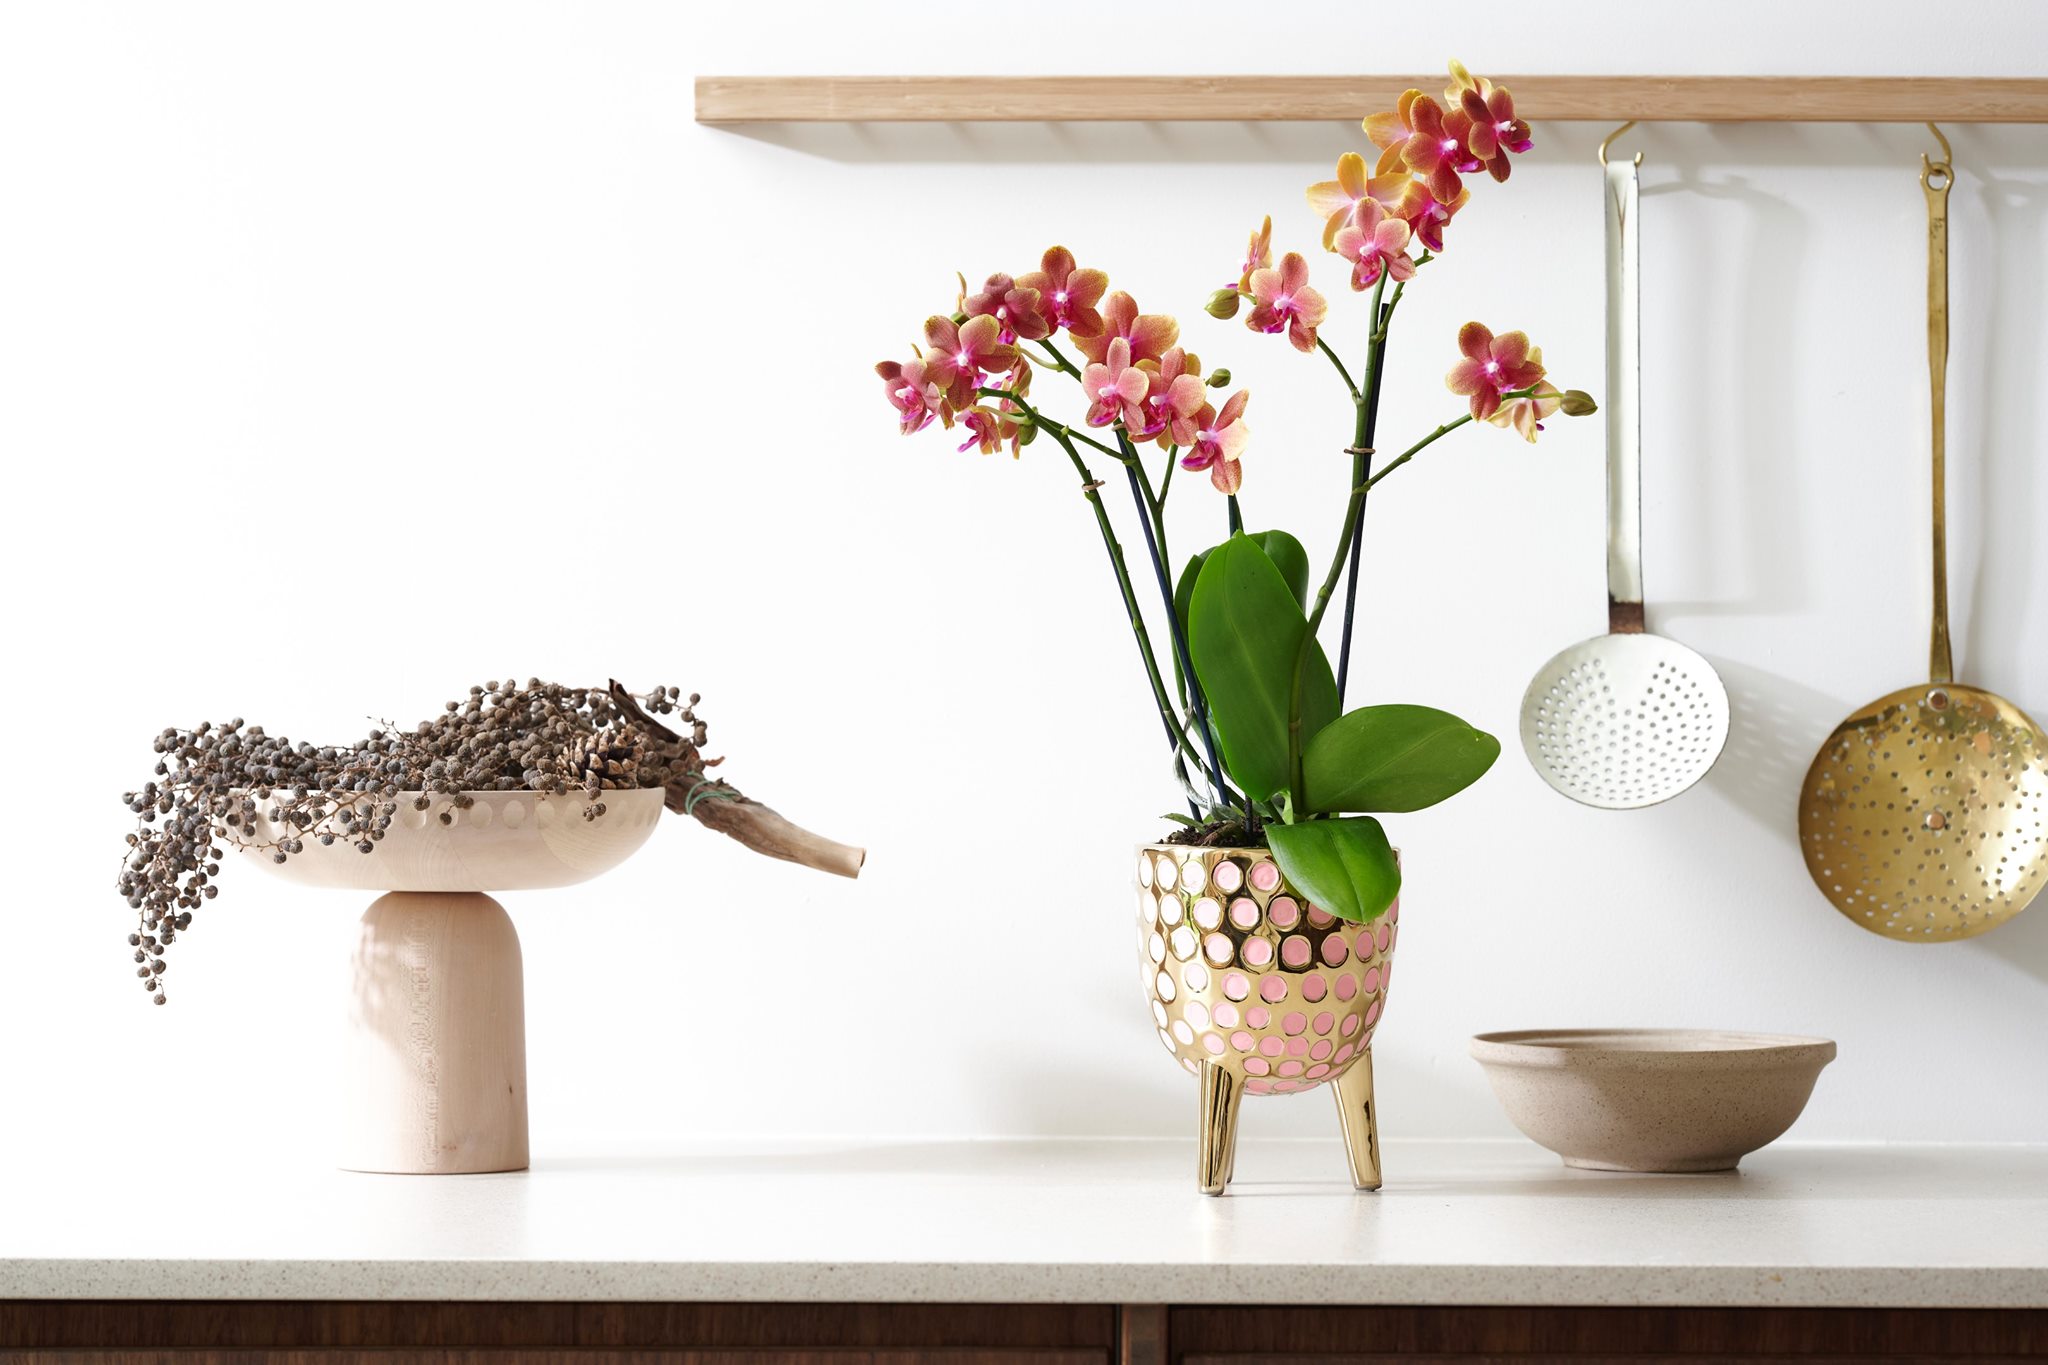 Voeg kleur aan je keuken toe met orchideeën